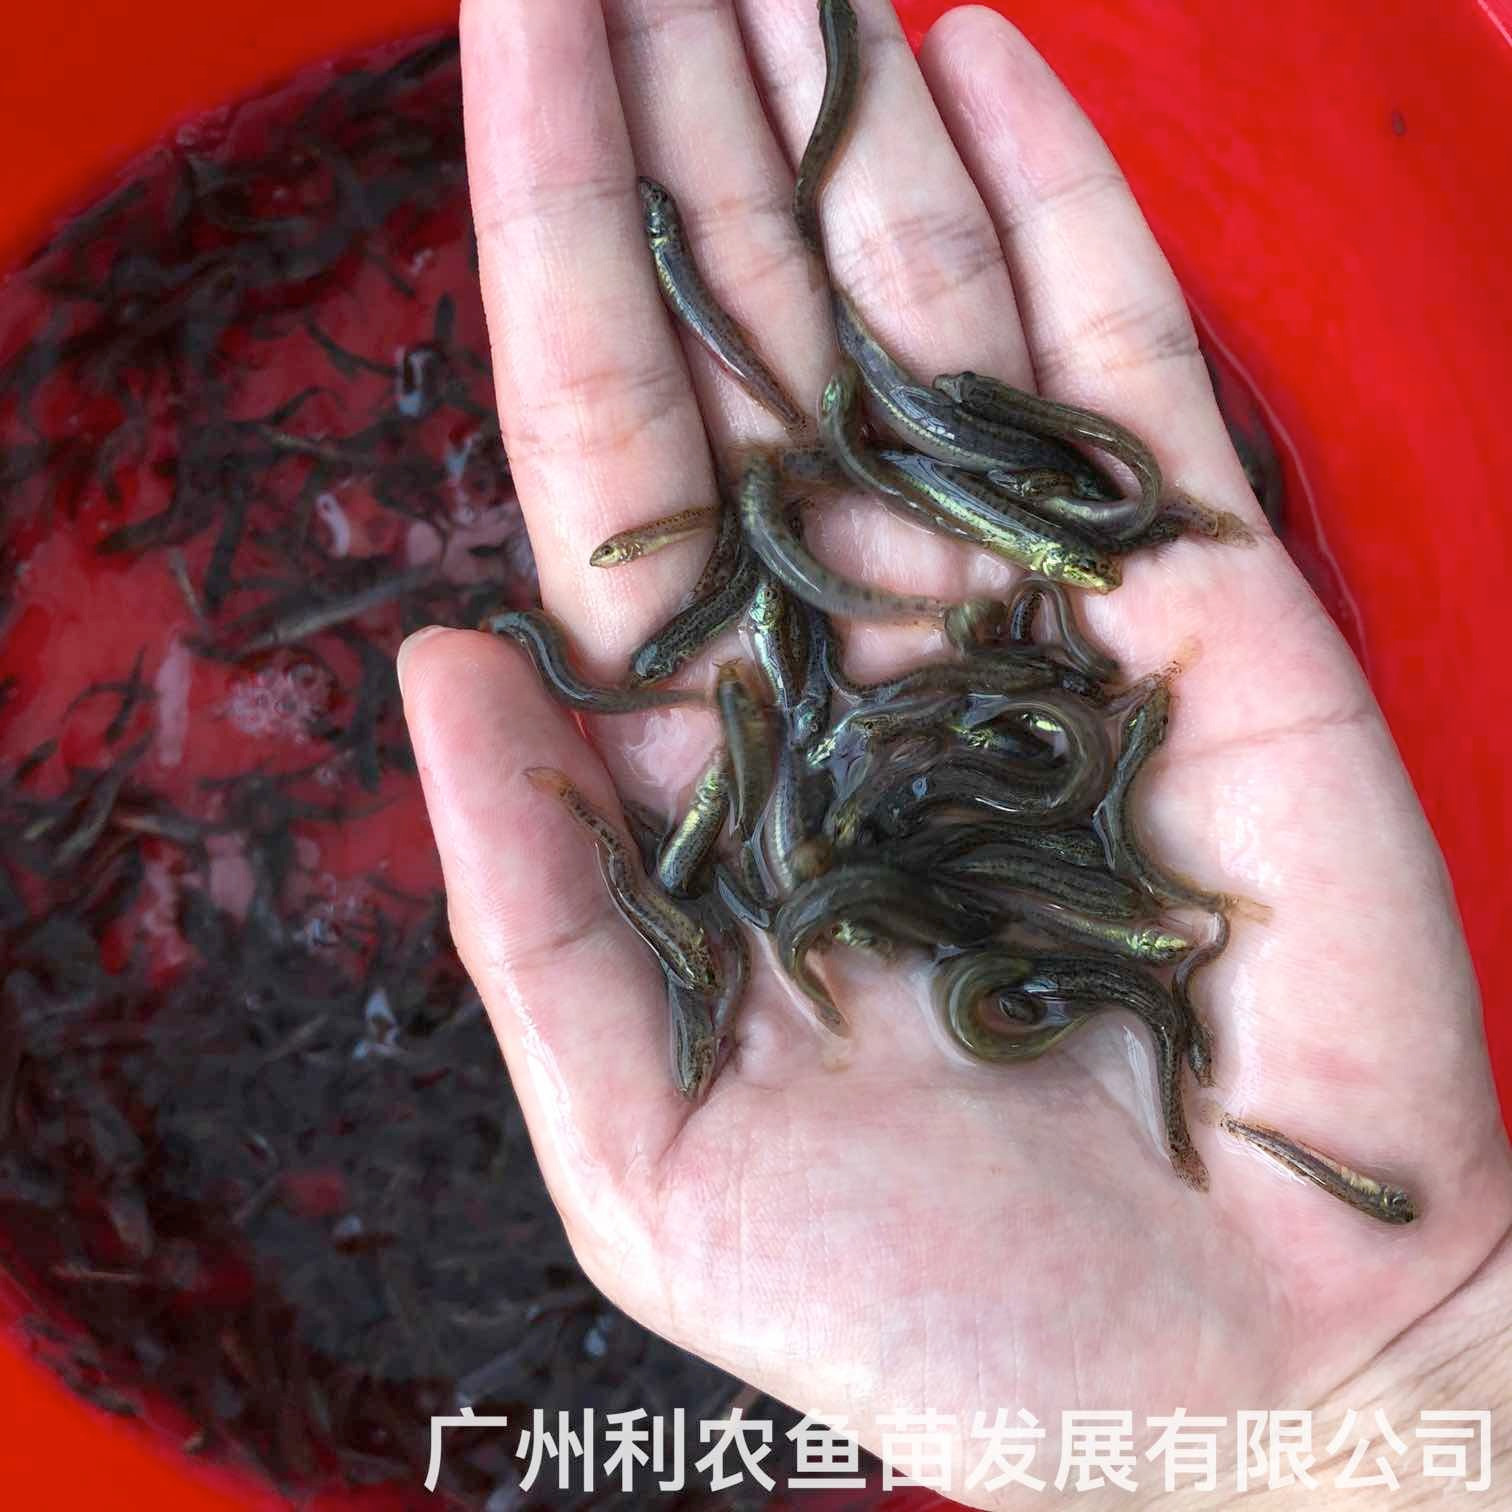 广西防城港台湾泥鳅苗出售广西贺州泥鳅鱼苗批发